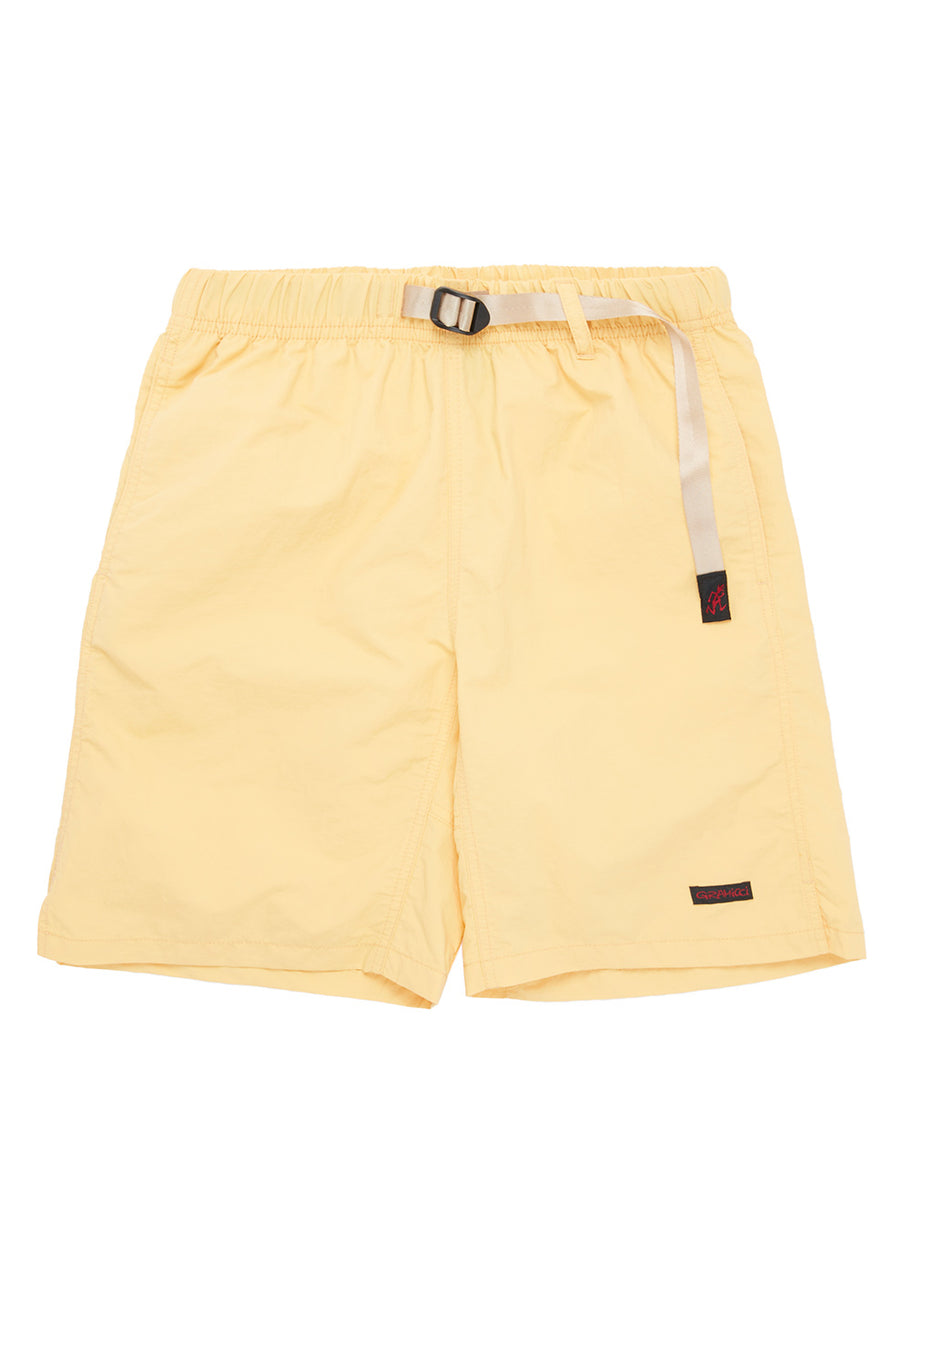 Gramicci Men's Nylon Packable G Shorts - Pale Orange